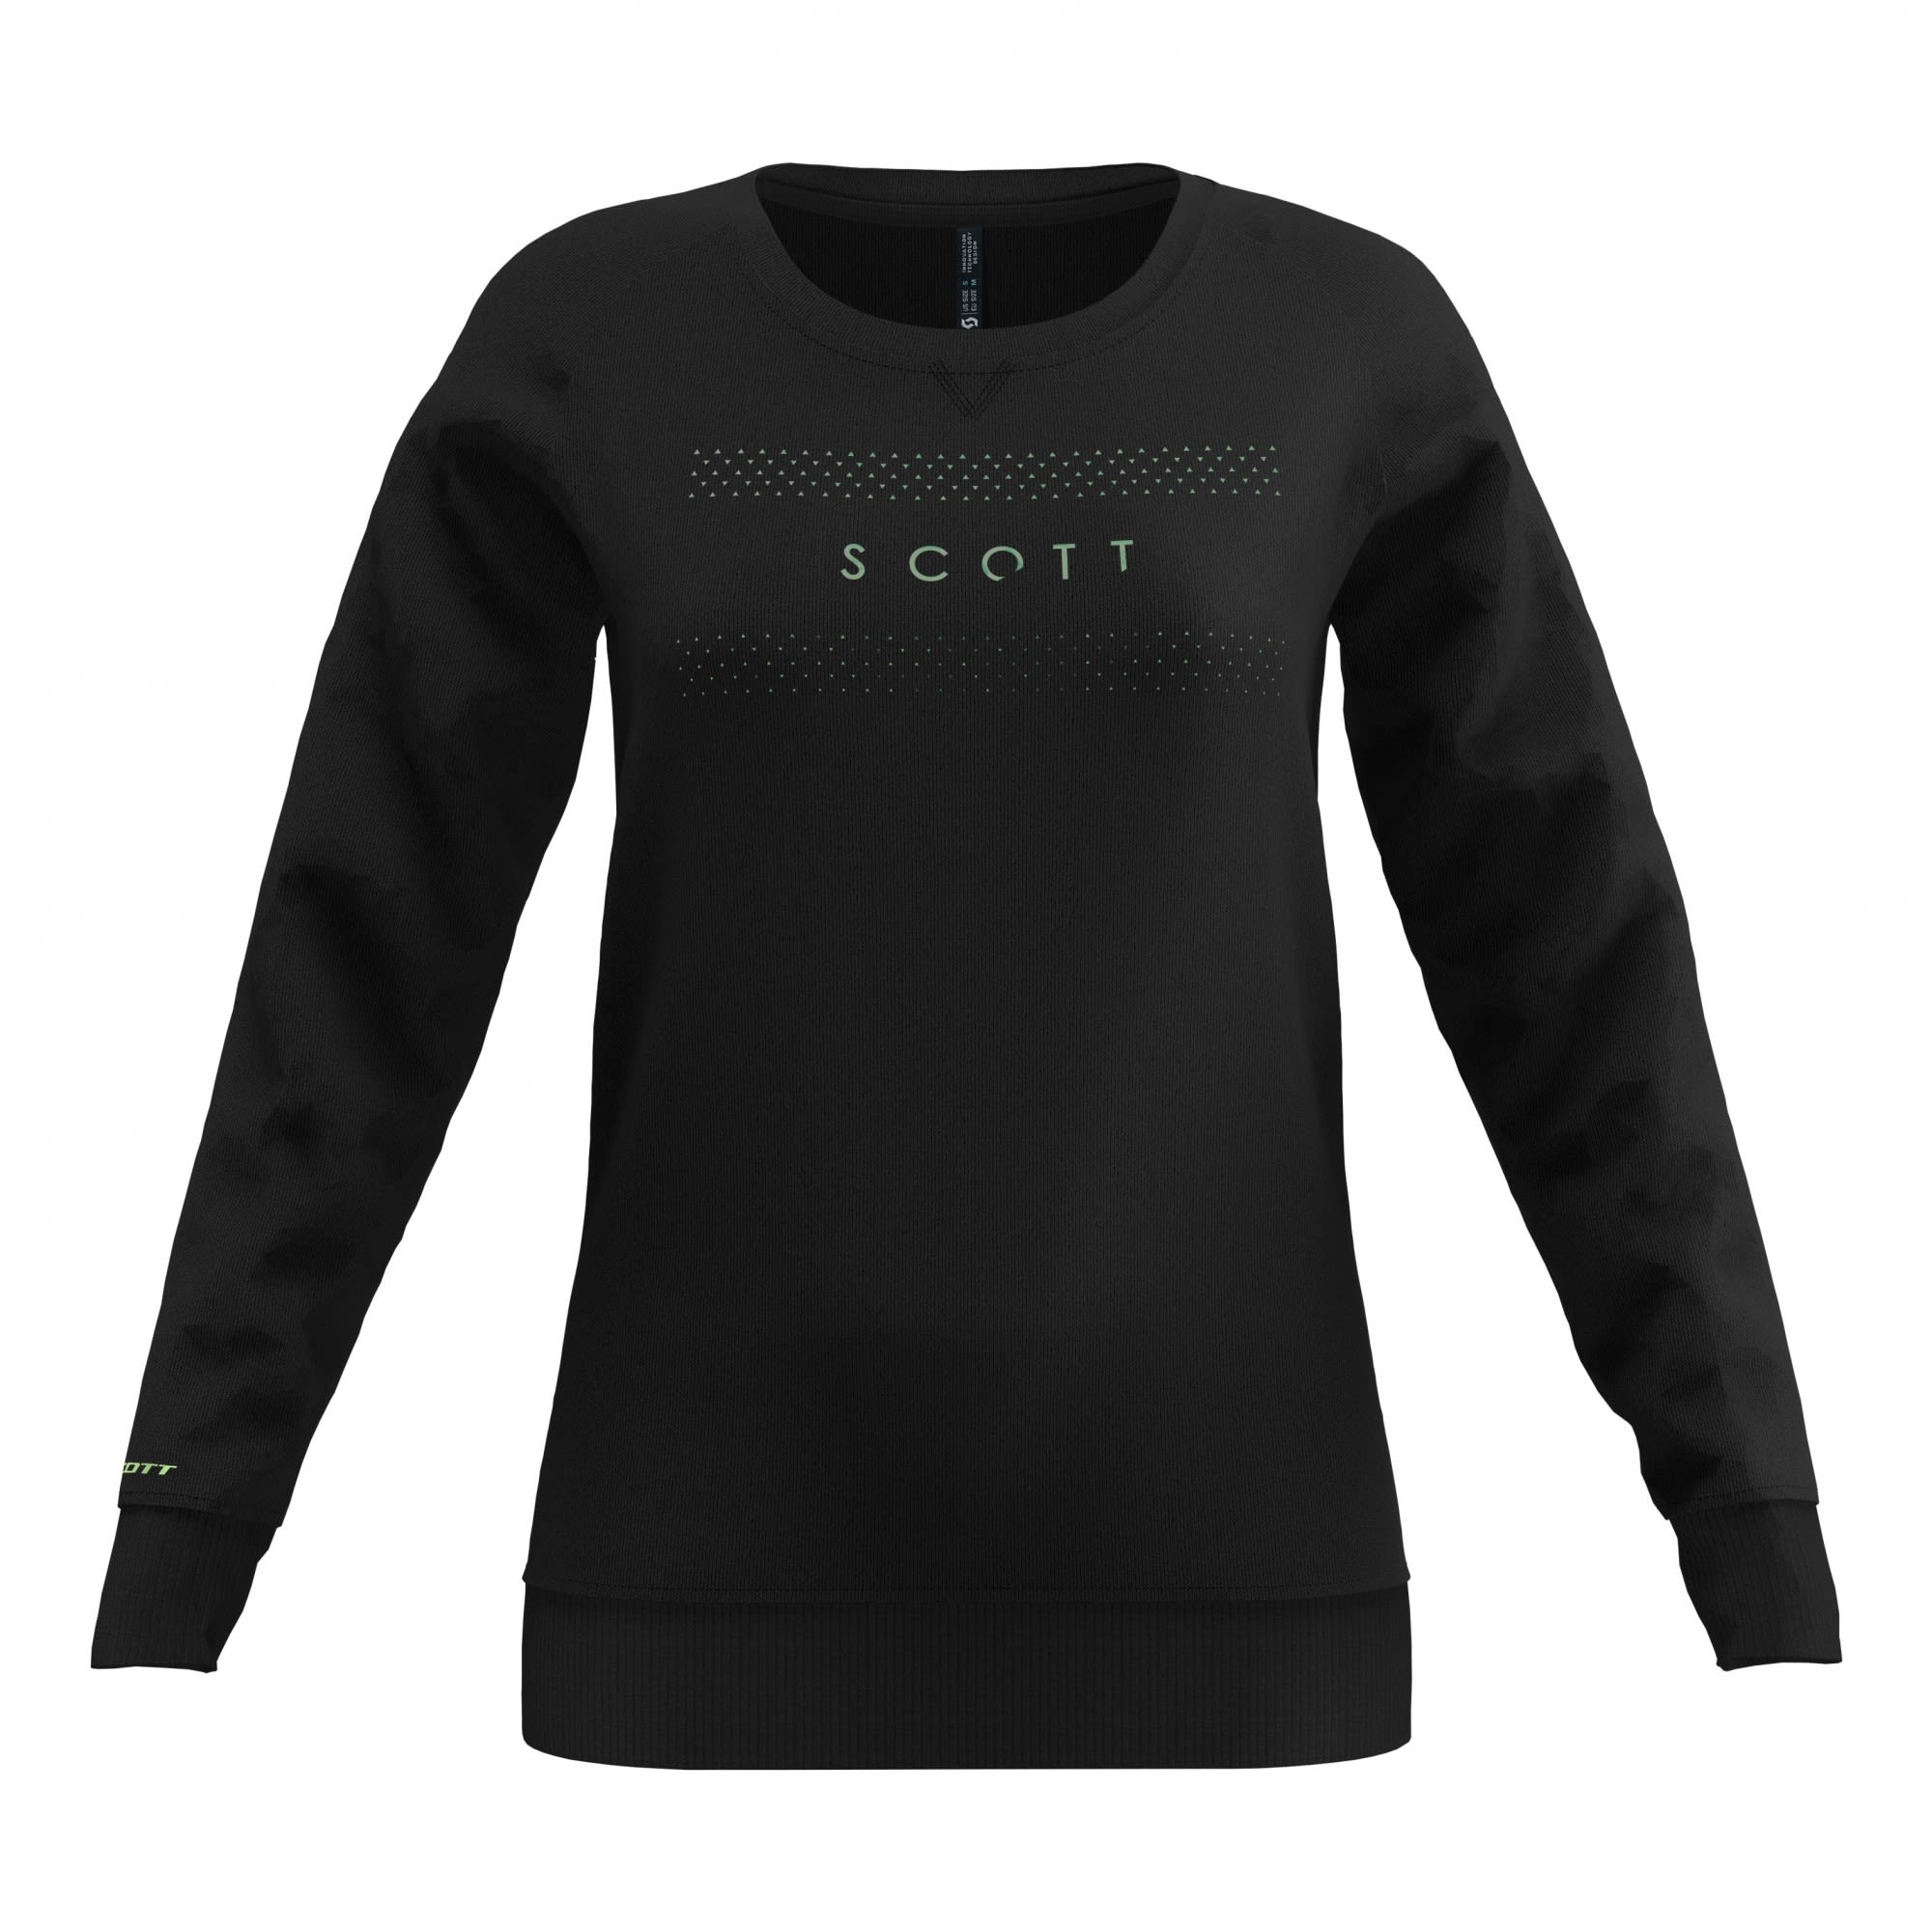 Scott Komfortabler stylischer Damen Sweater Black - Kollektion 2020